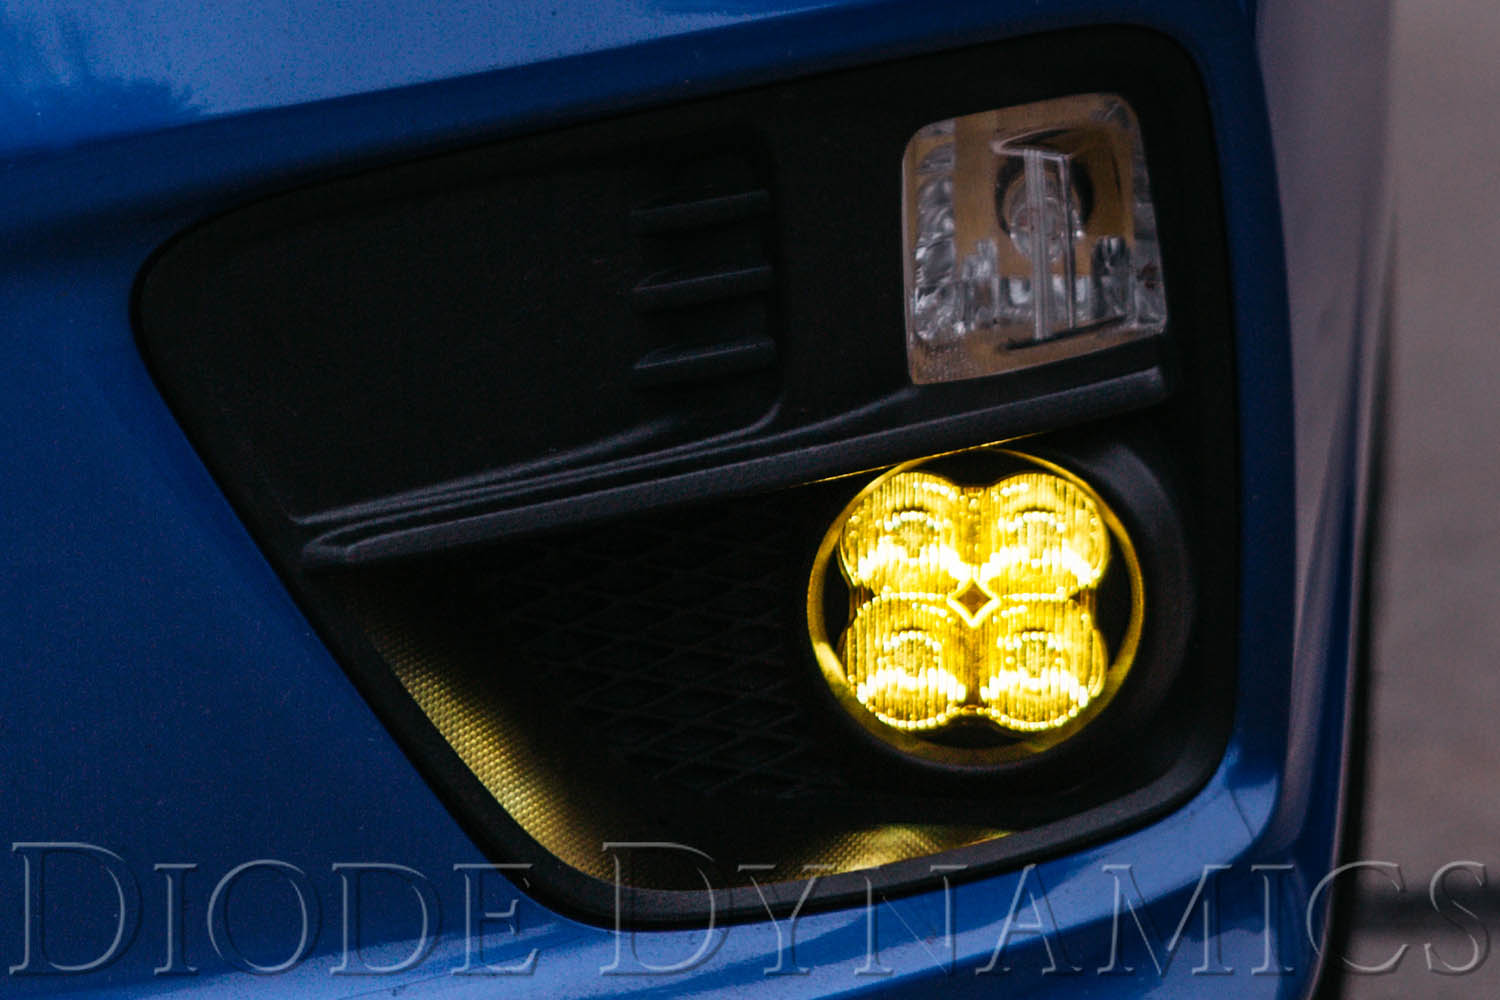 SS3 LED Fog Light Kit for 2013-2016 Honda CR-Z White SAE/DOT Driving Pro Diode Dynamics